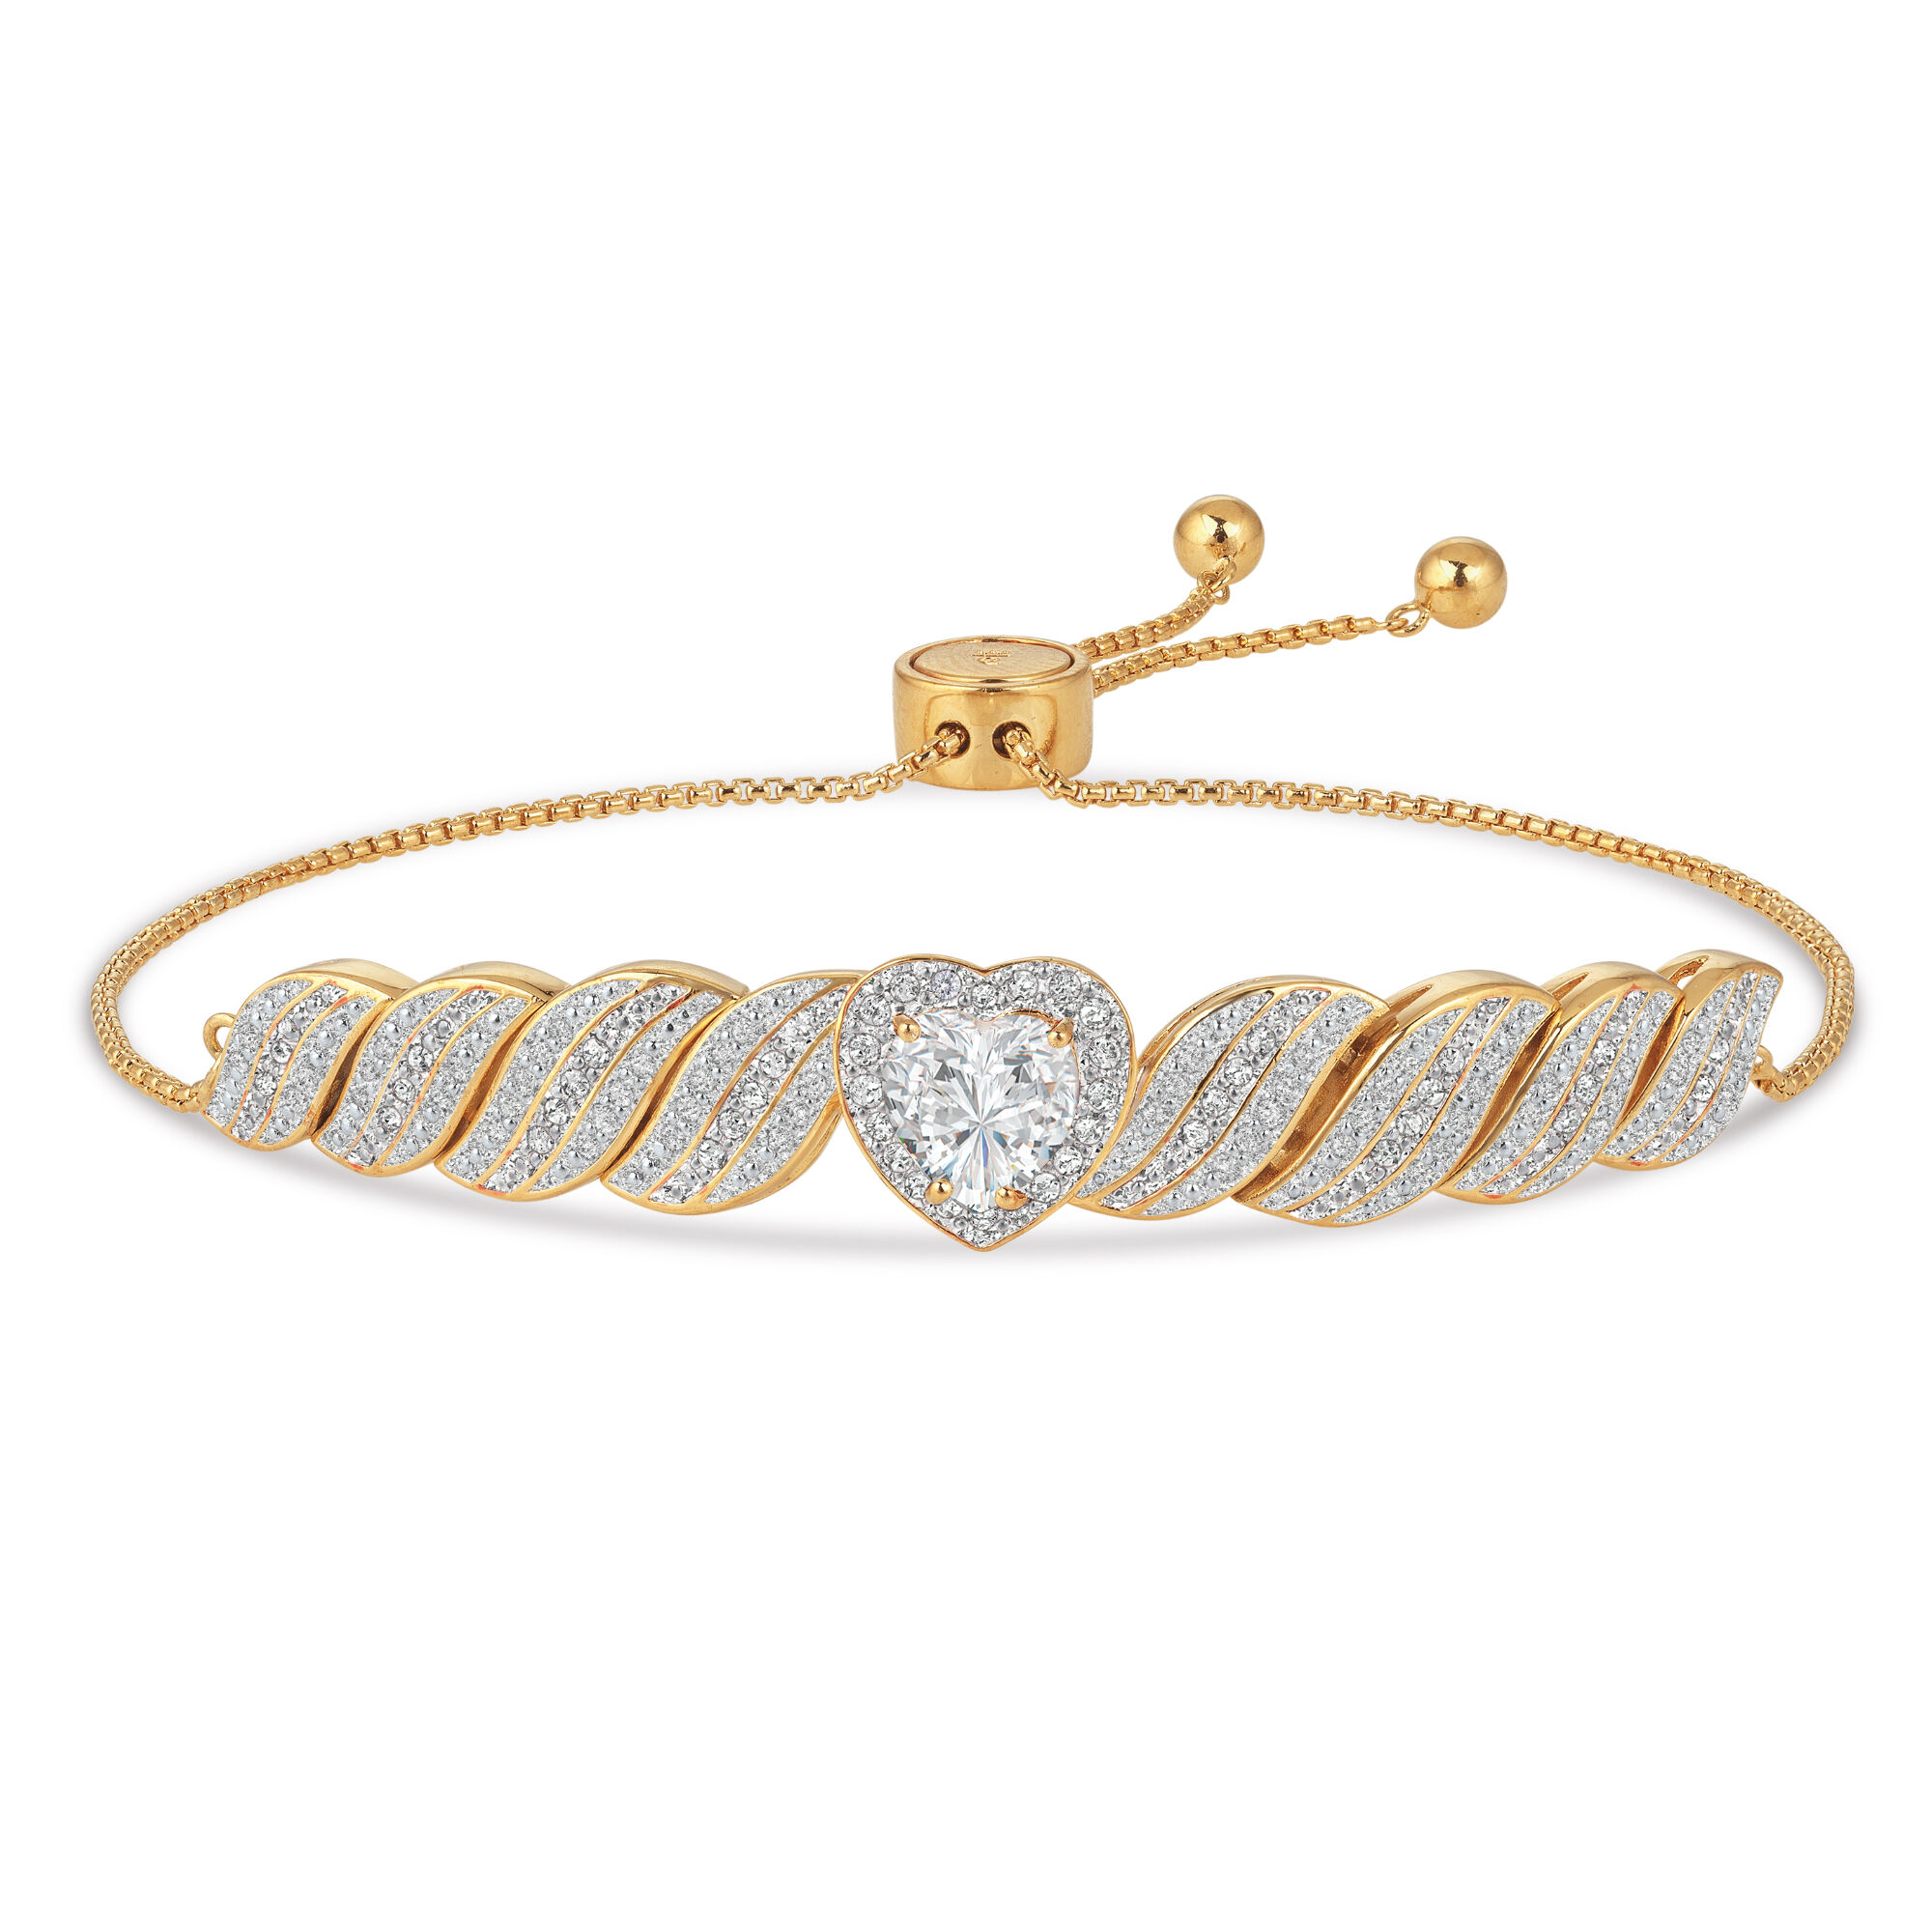 Diamond Bracelets & April Birthstone Bracelets